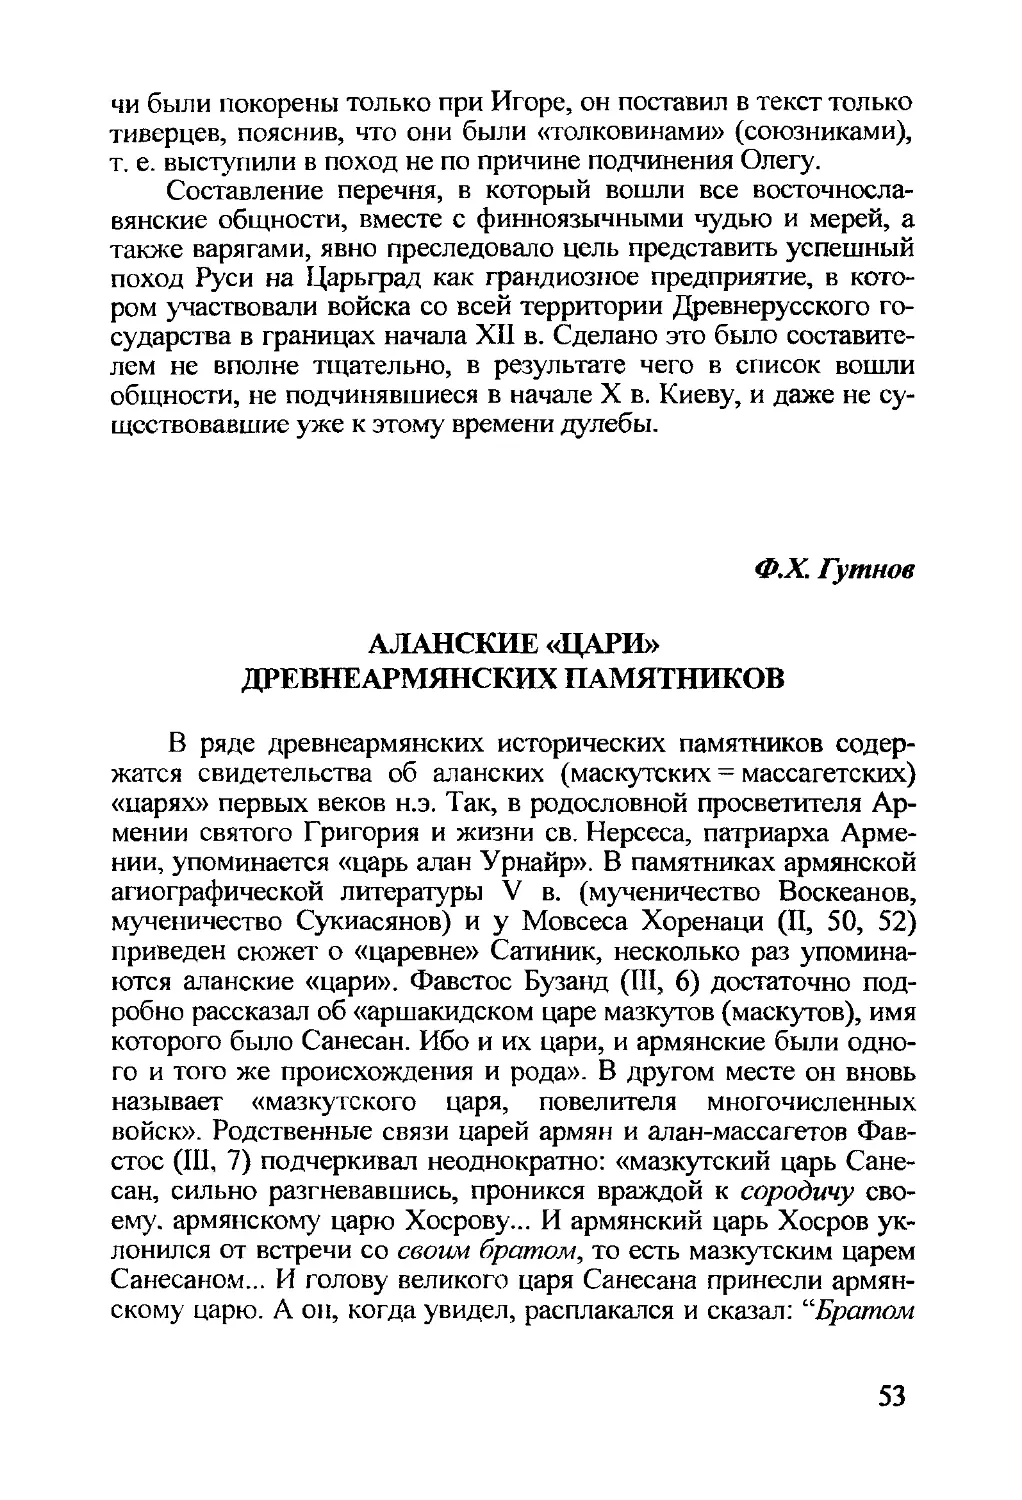 Гутнов Ф.Х. Аланские «цари» древнеармянских памятников